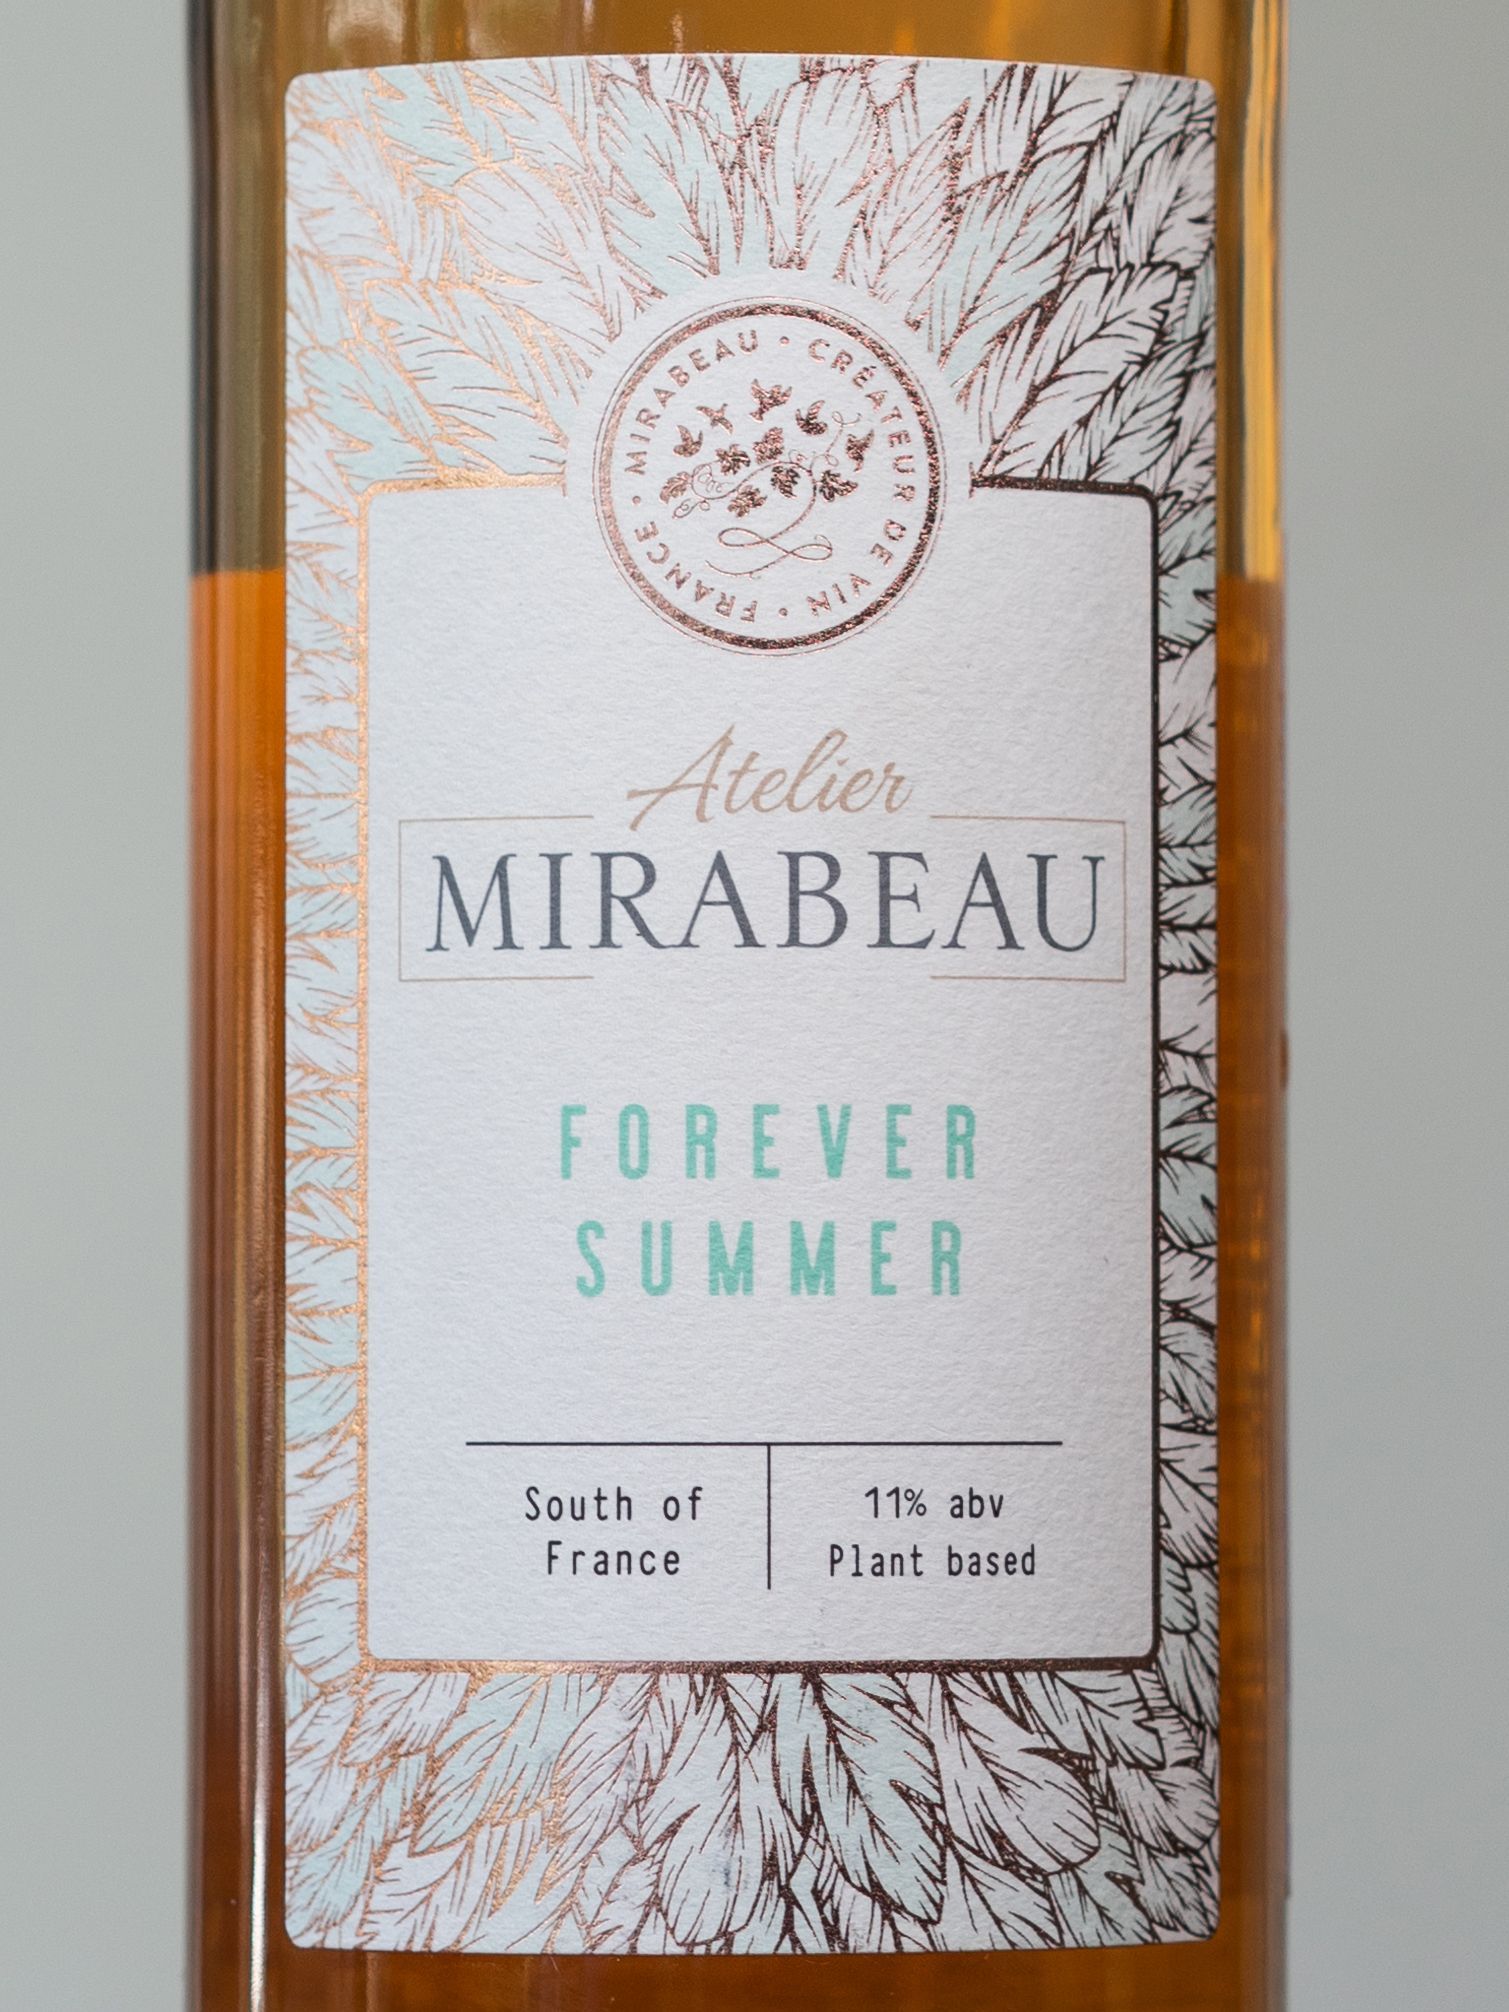 Вино Mirabeau Atelier Forever Summer / Ателье Мирабо Форевер Саммер